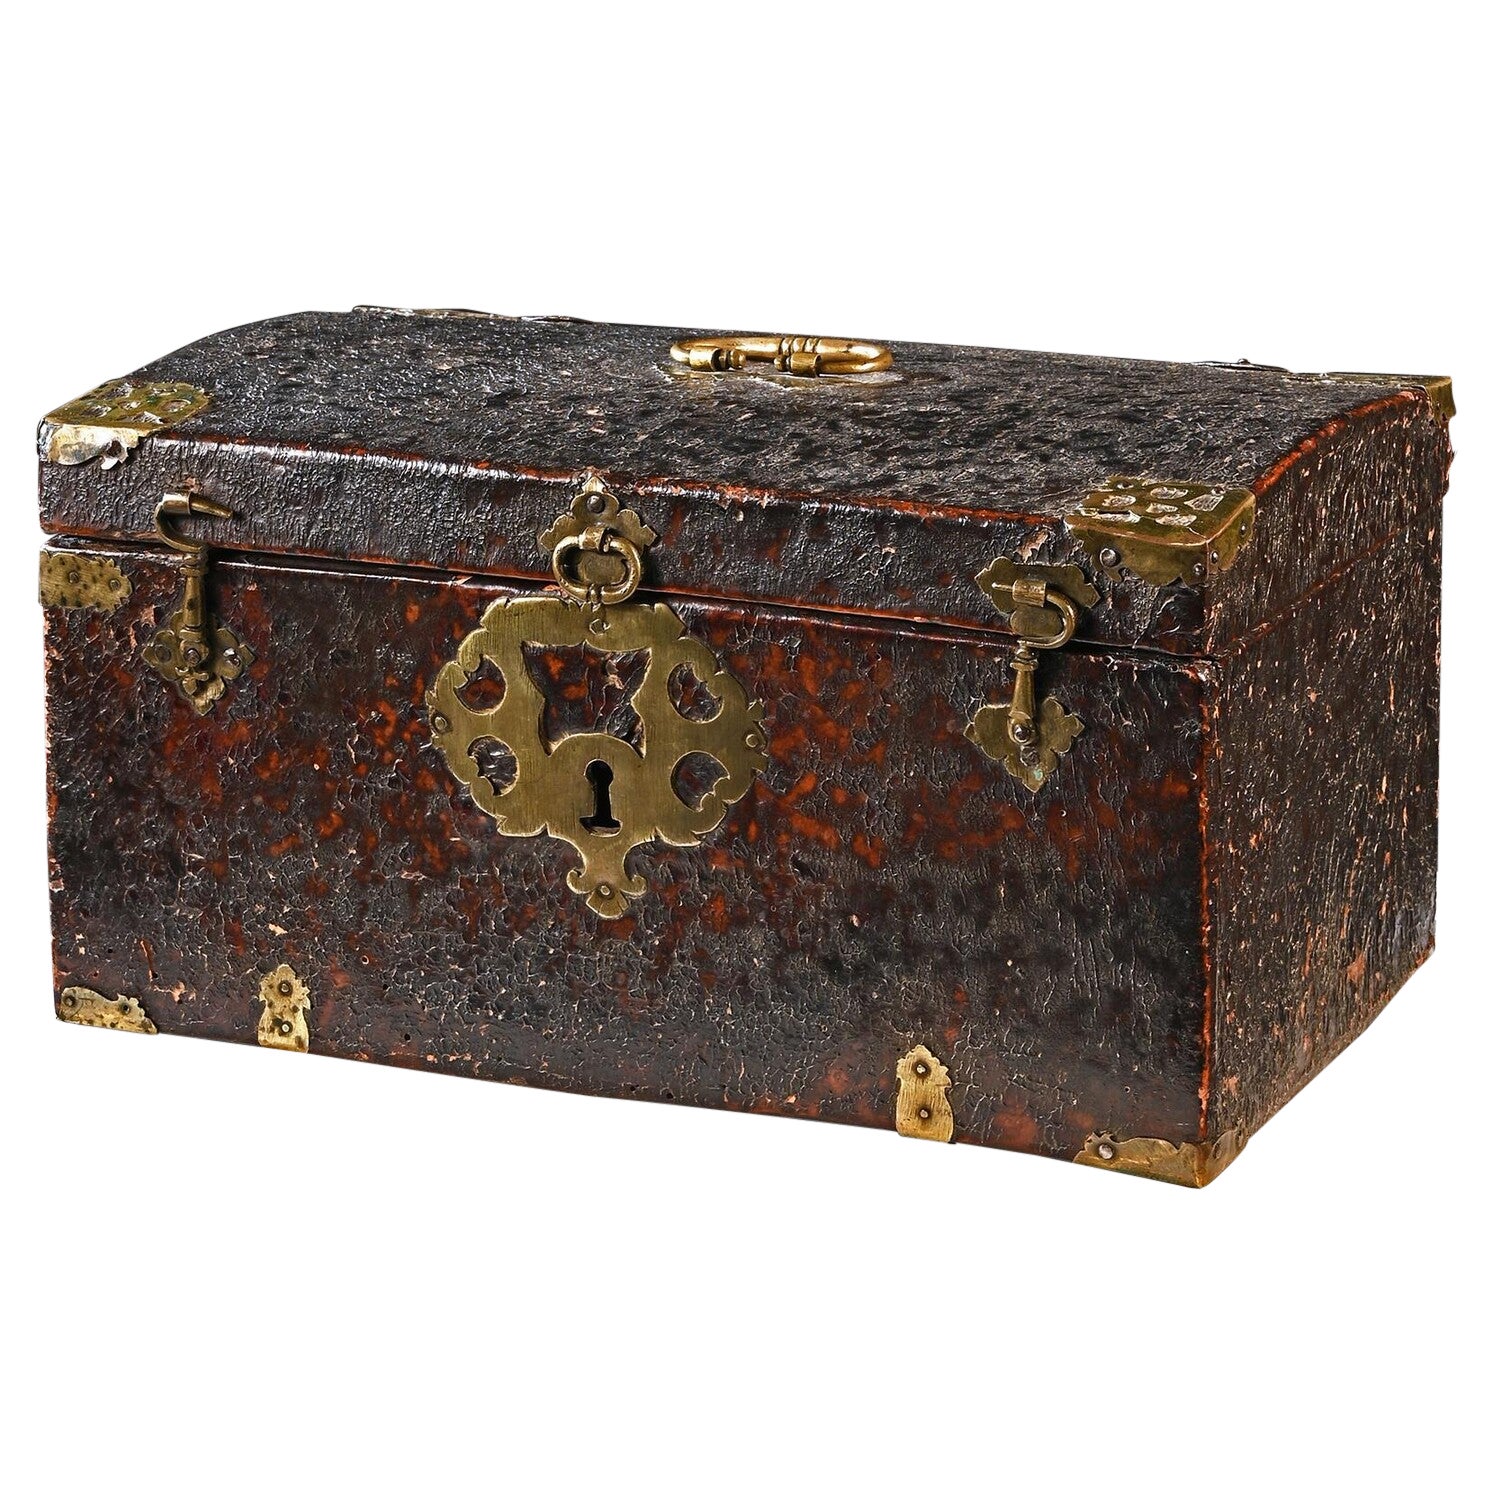 Boîte de voyage en cuir et laiton de la fin du XVIIe siècle